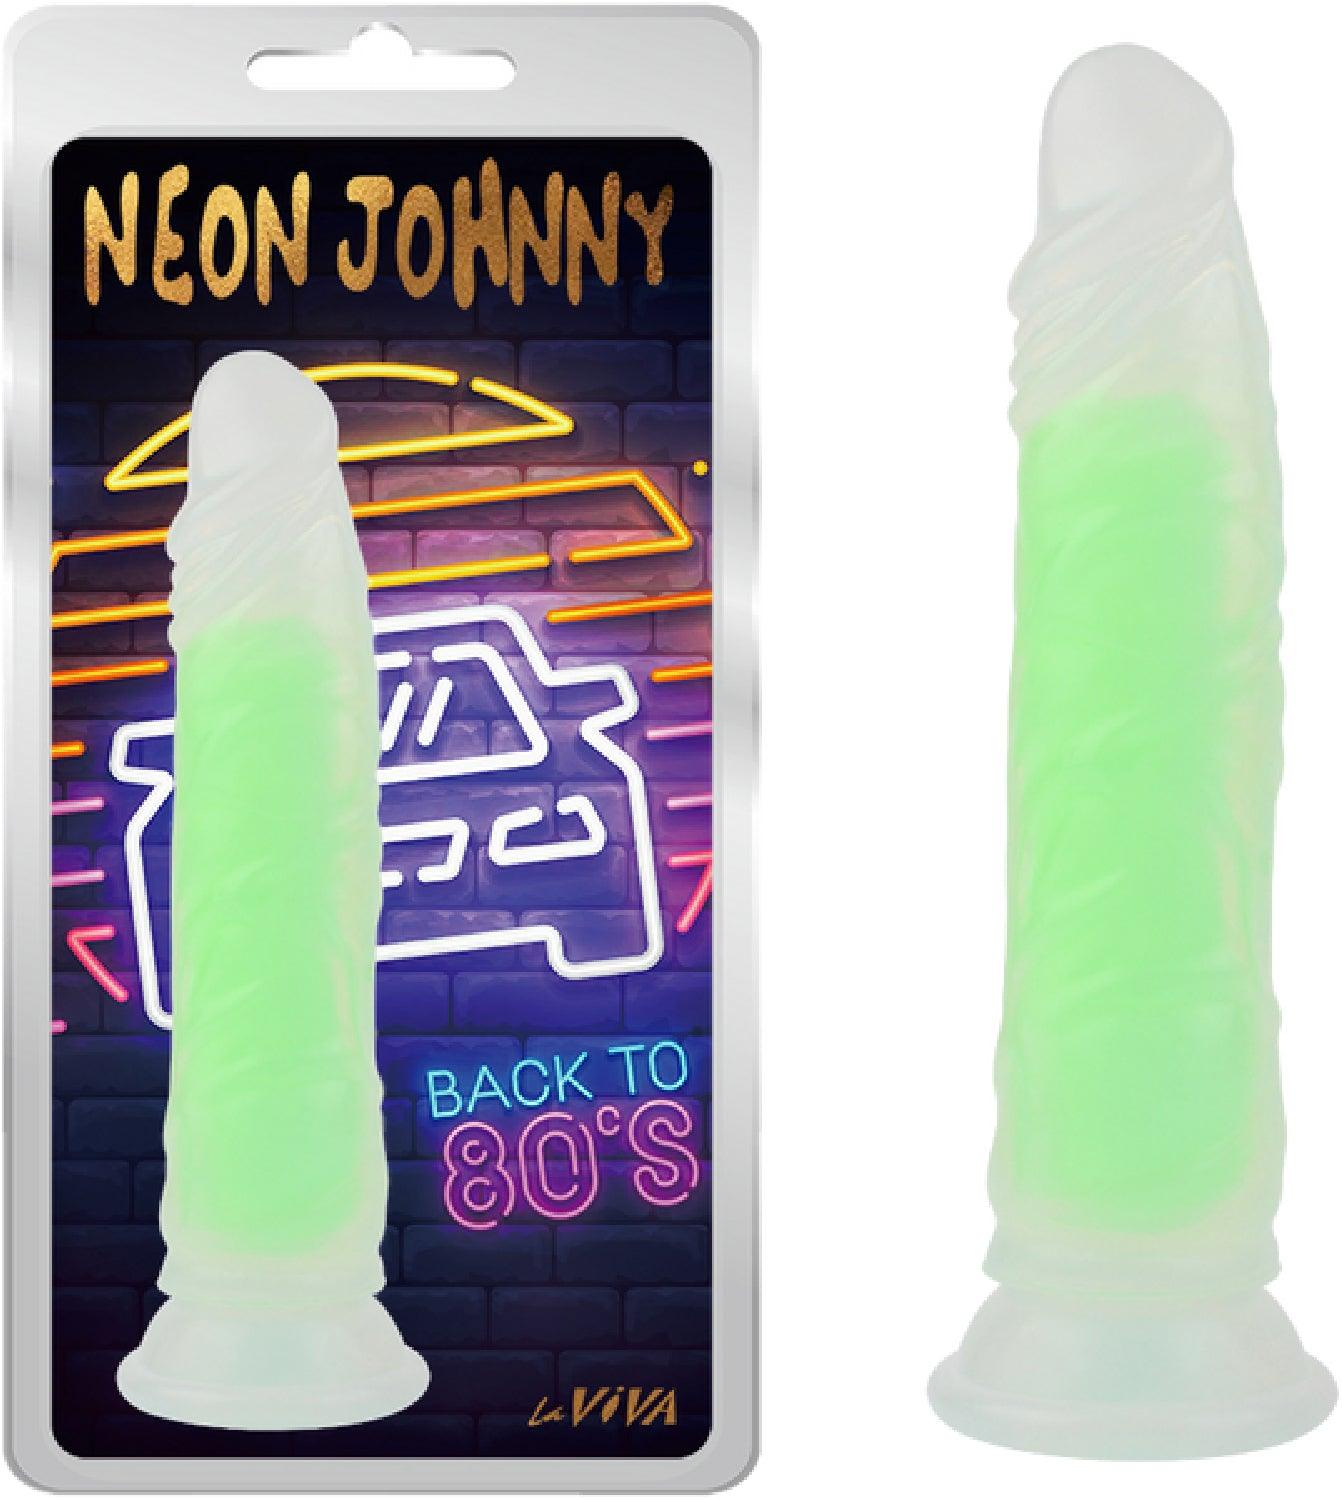 Neon Johnny 8.4" - Take A Peek